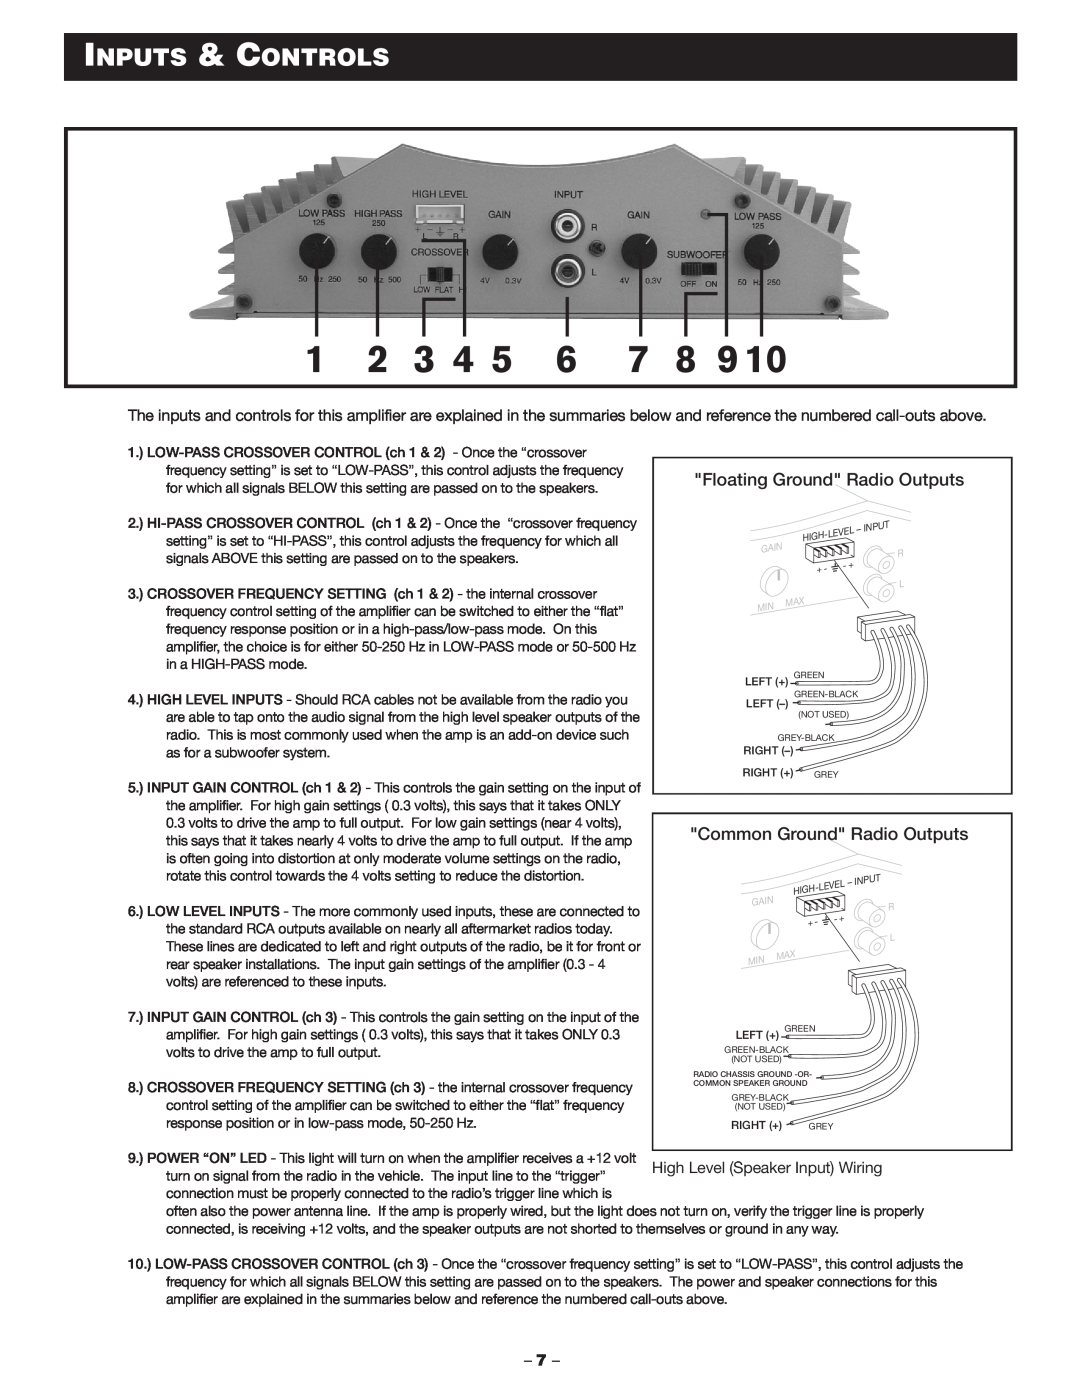 Blaupunkt MPA 400US manual Inputs & Controls, Floating Ground Radio Outputs, Common Ground Radio Outputs 